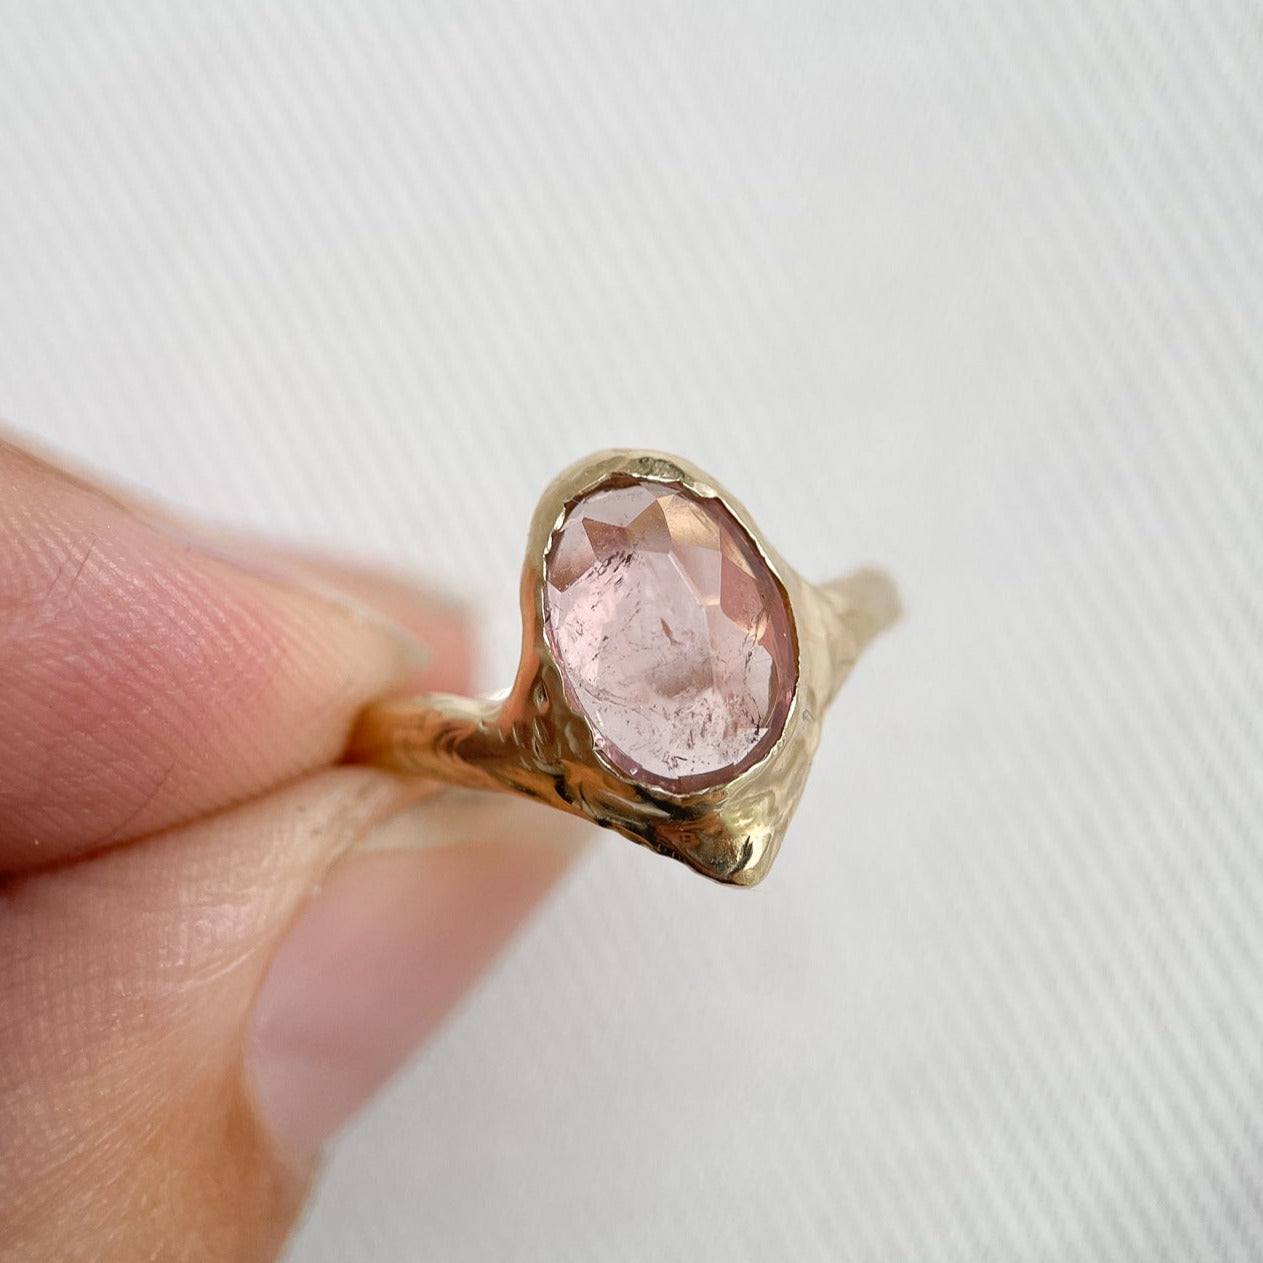 Pink tourmaline ring set in 14k gold